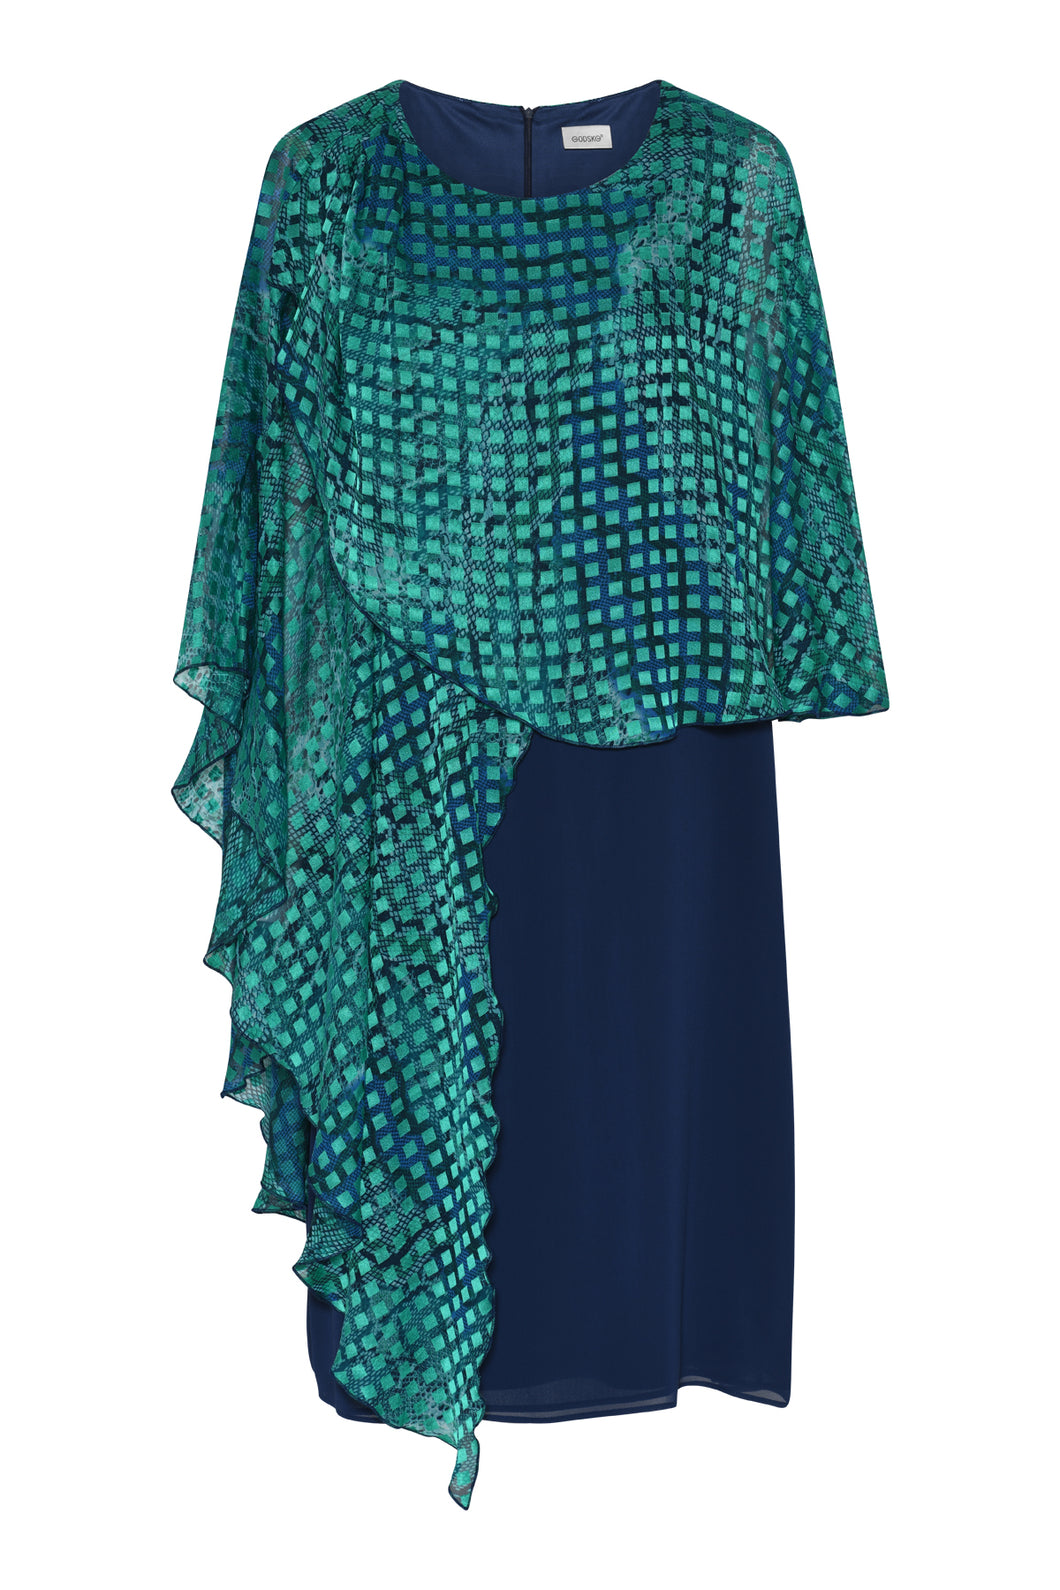 Godske - Chiffon Dress with Waterfall overtop - Emerald & Blue